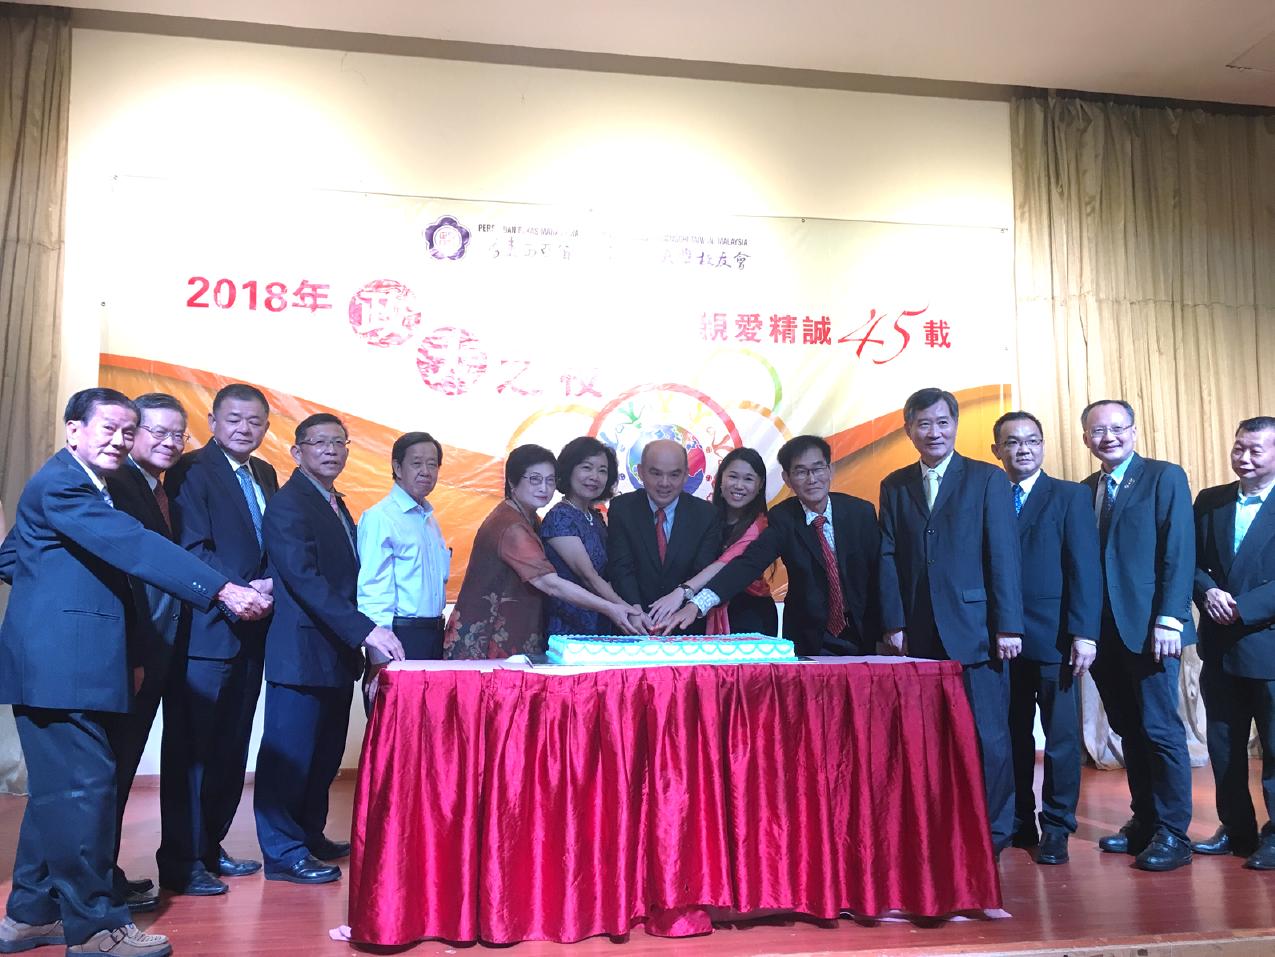 洪大使慧珠(左7)出席「2018年馬來西亞政大之夜暨校友會45週年慶」活動與貴賓合影。